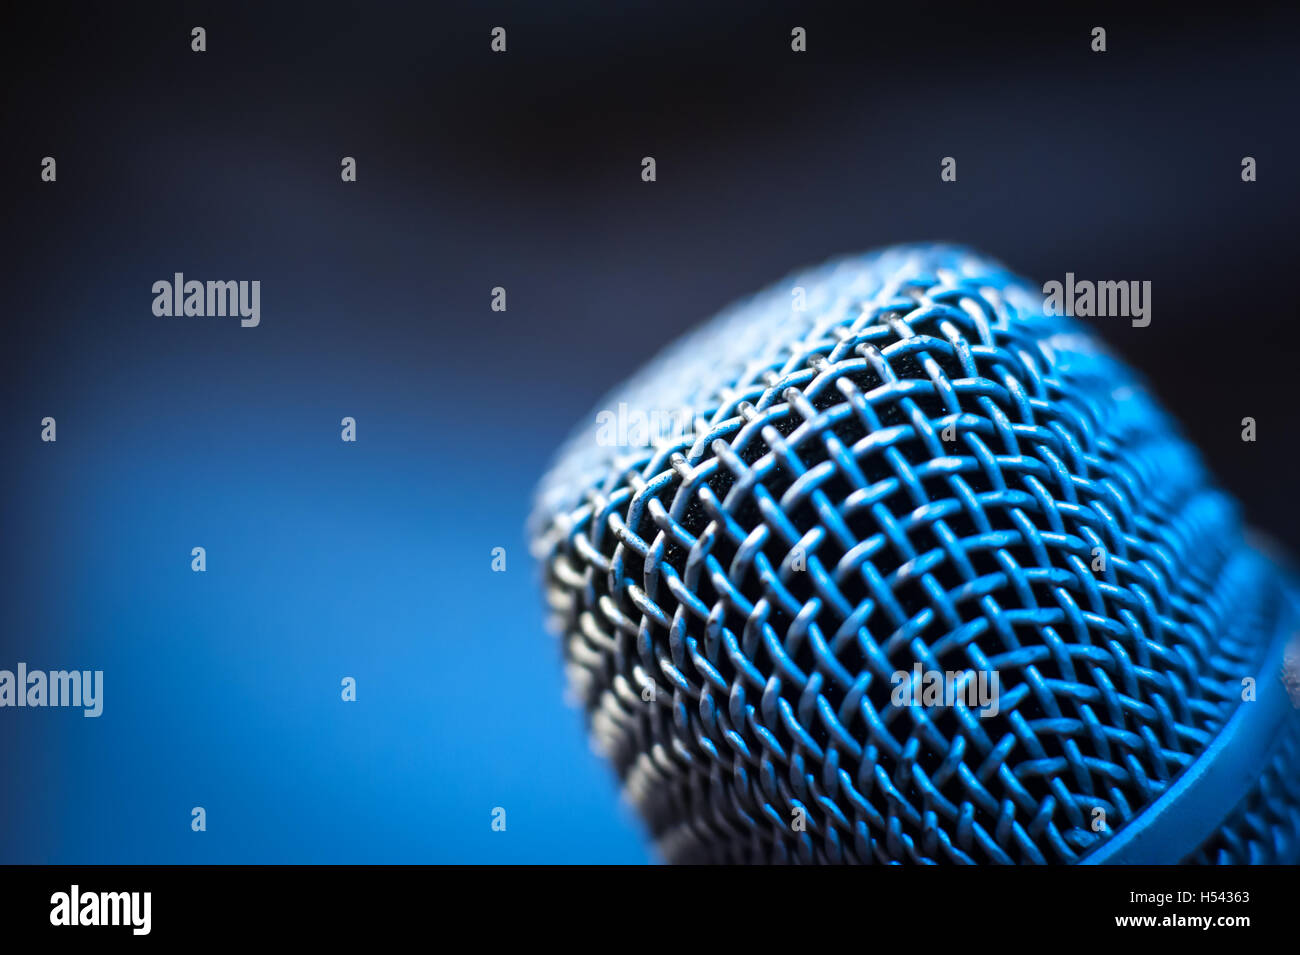 Nero moderno studio microfono testa macro close up con fuori fuoco freddo sfondo blu Foto Stock